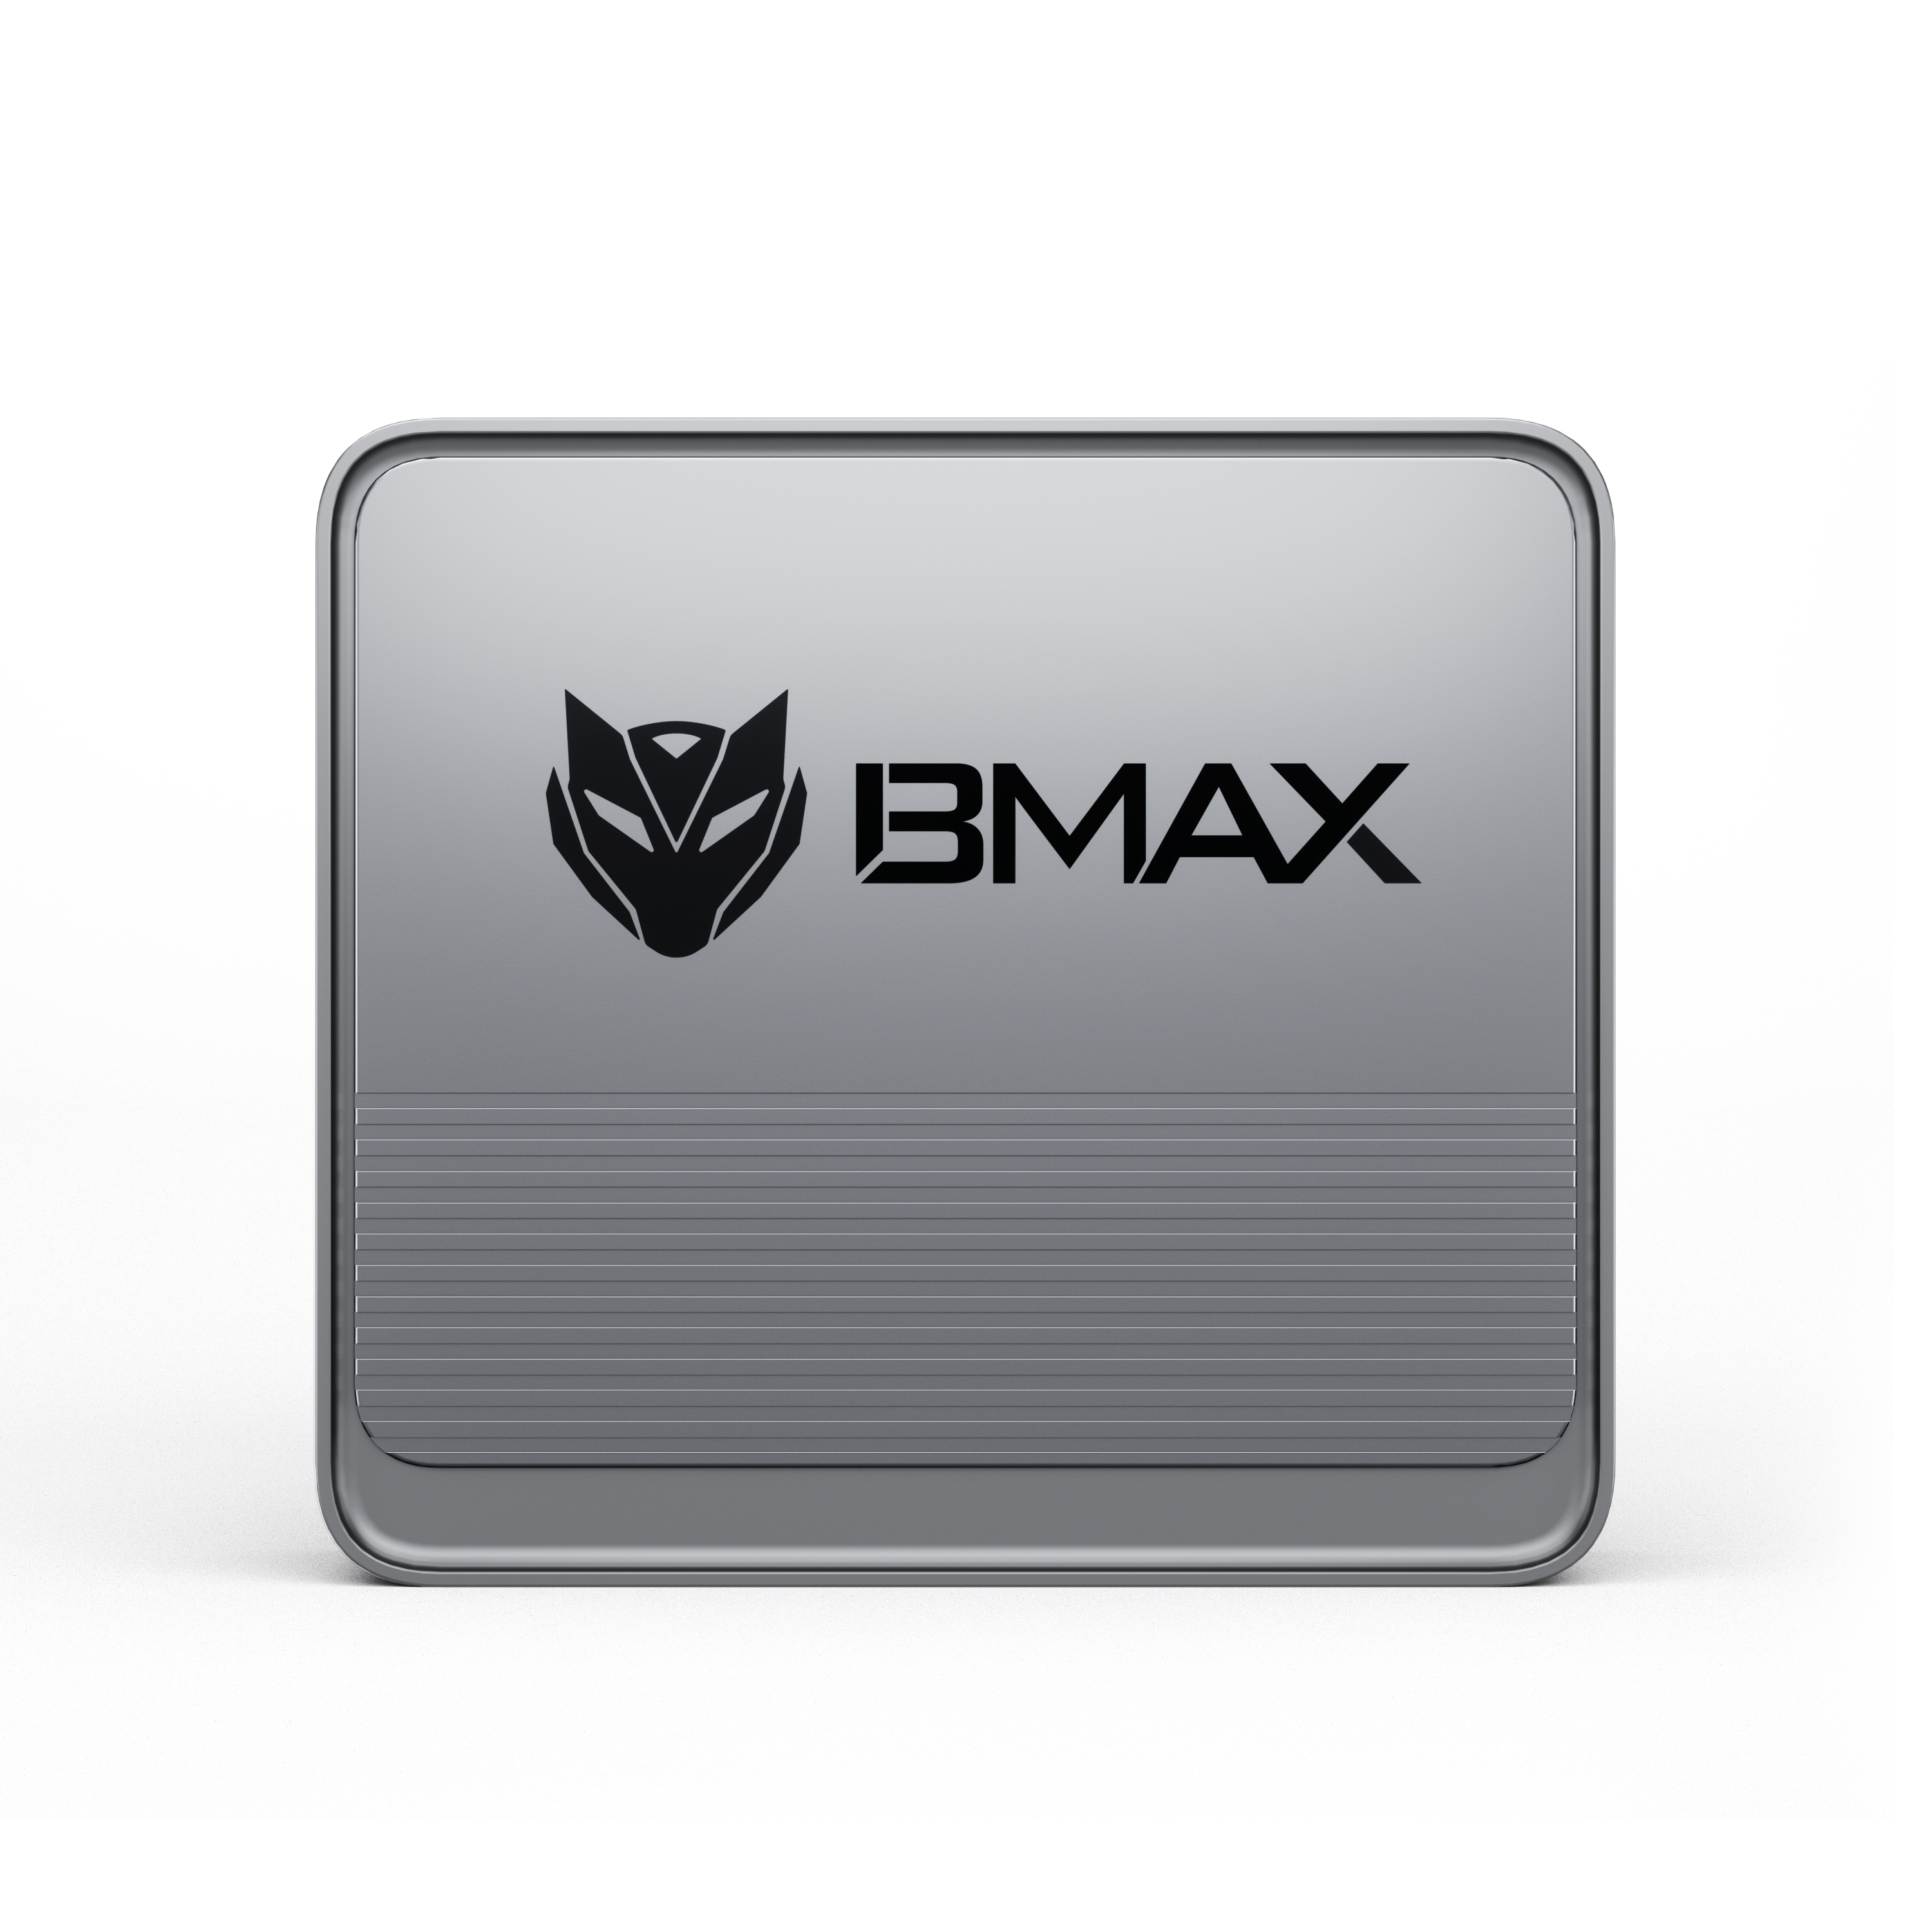 BMAX B3 Windows 11 Mini PC N5095 8GB DDR4 256GB SSD Add 0/1T/2T